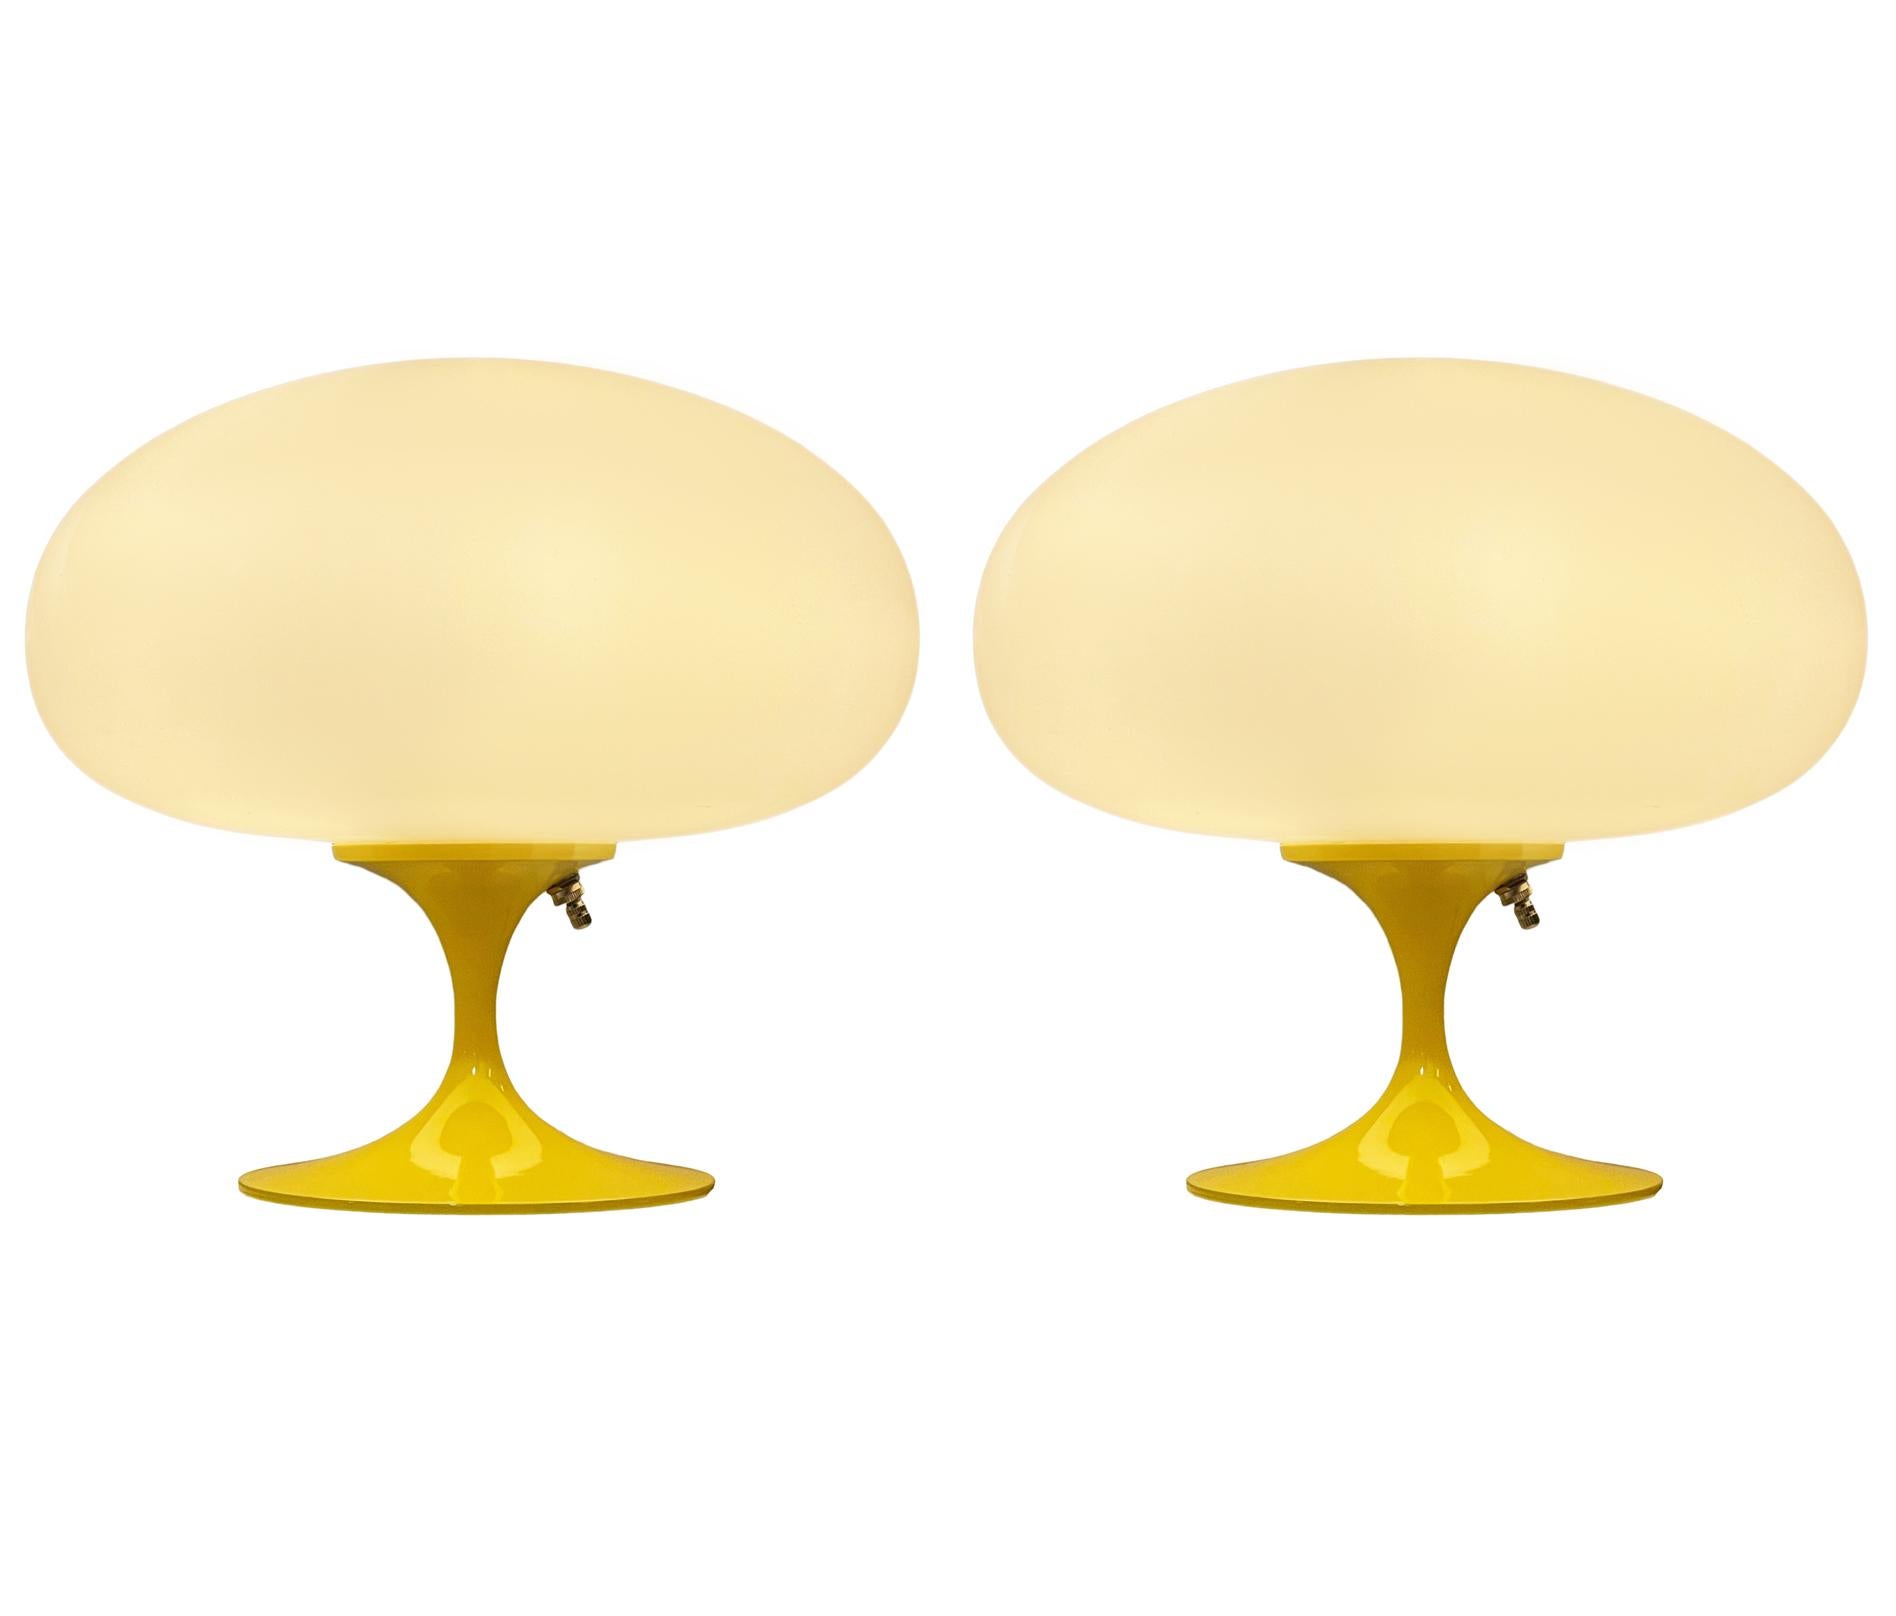 Une magnifique paire de lampes de table en forme de tulipe de la compagnie Laurel Lamp. Ces lampes sont dotées d'une base en aluminium coulé revêtue de poudre jaune et d'un abat-jour en verre blanc dépoli soufflé à la bouche. Le prix comprend la